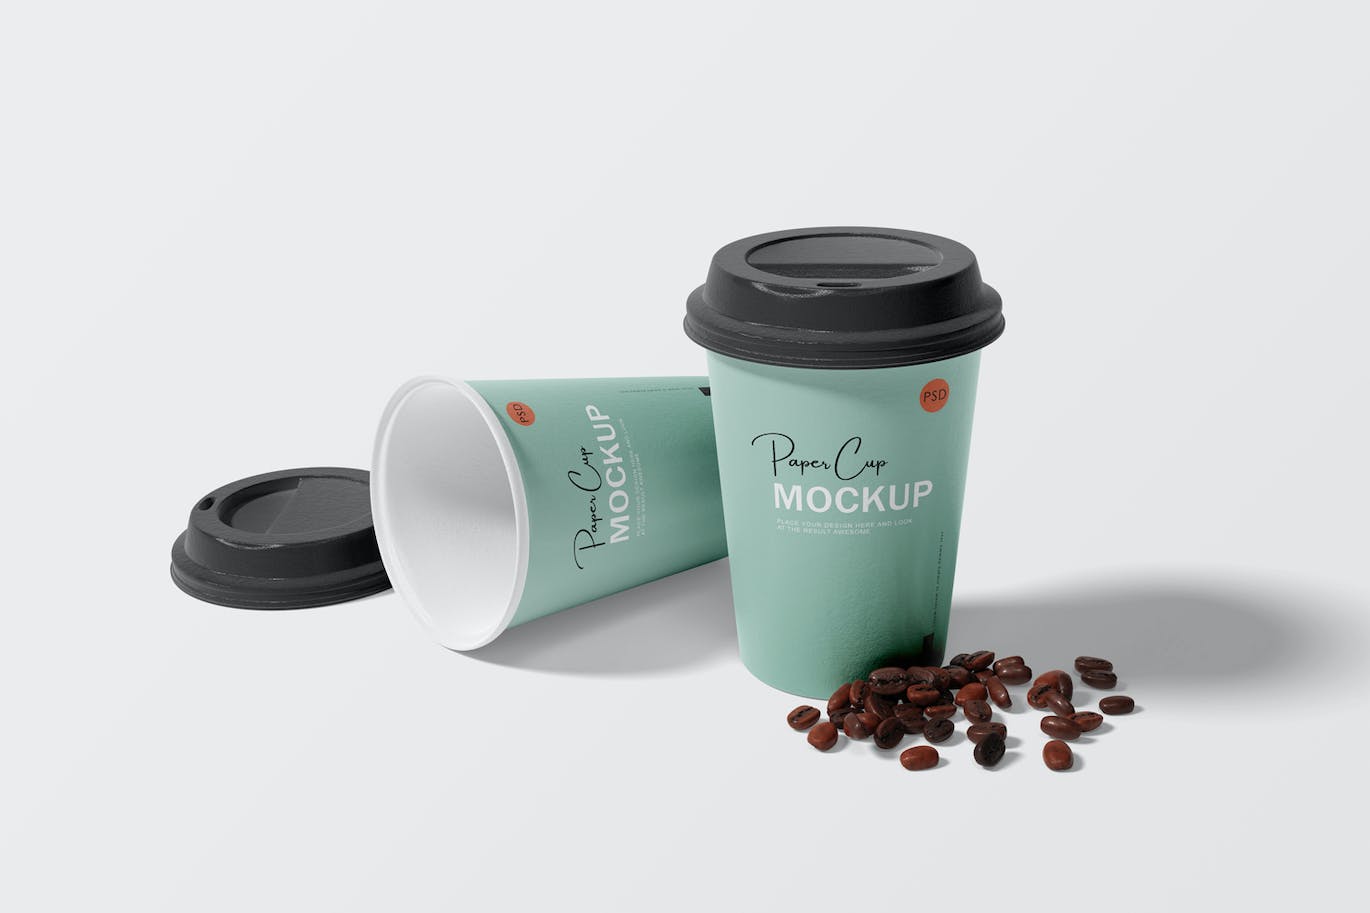 纸咖啡杯品牌设计样机 Paper coffee cup mockup 样机素材 第4张